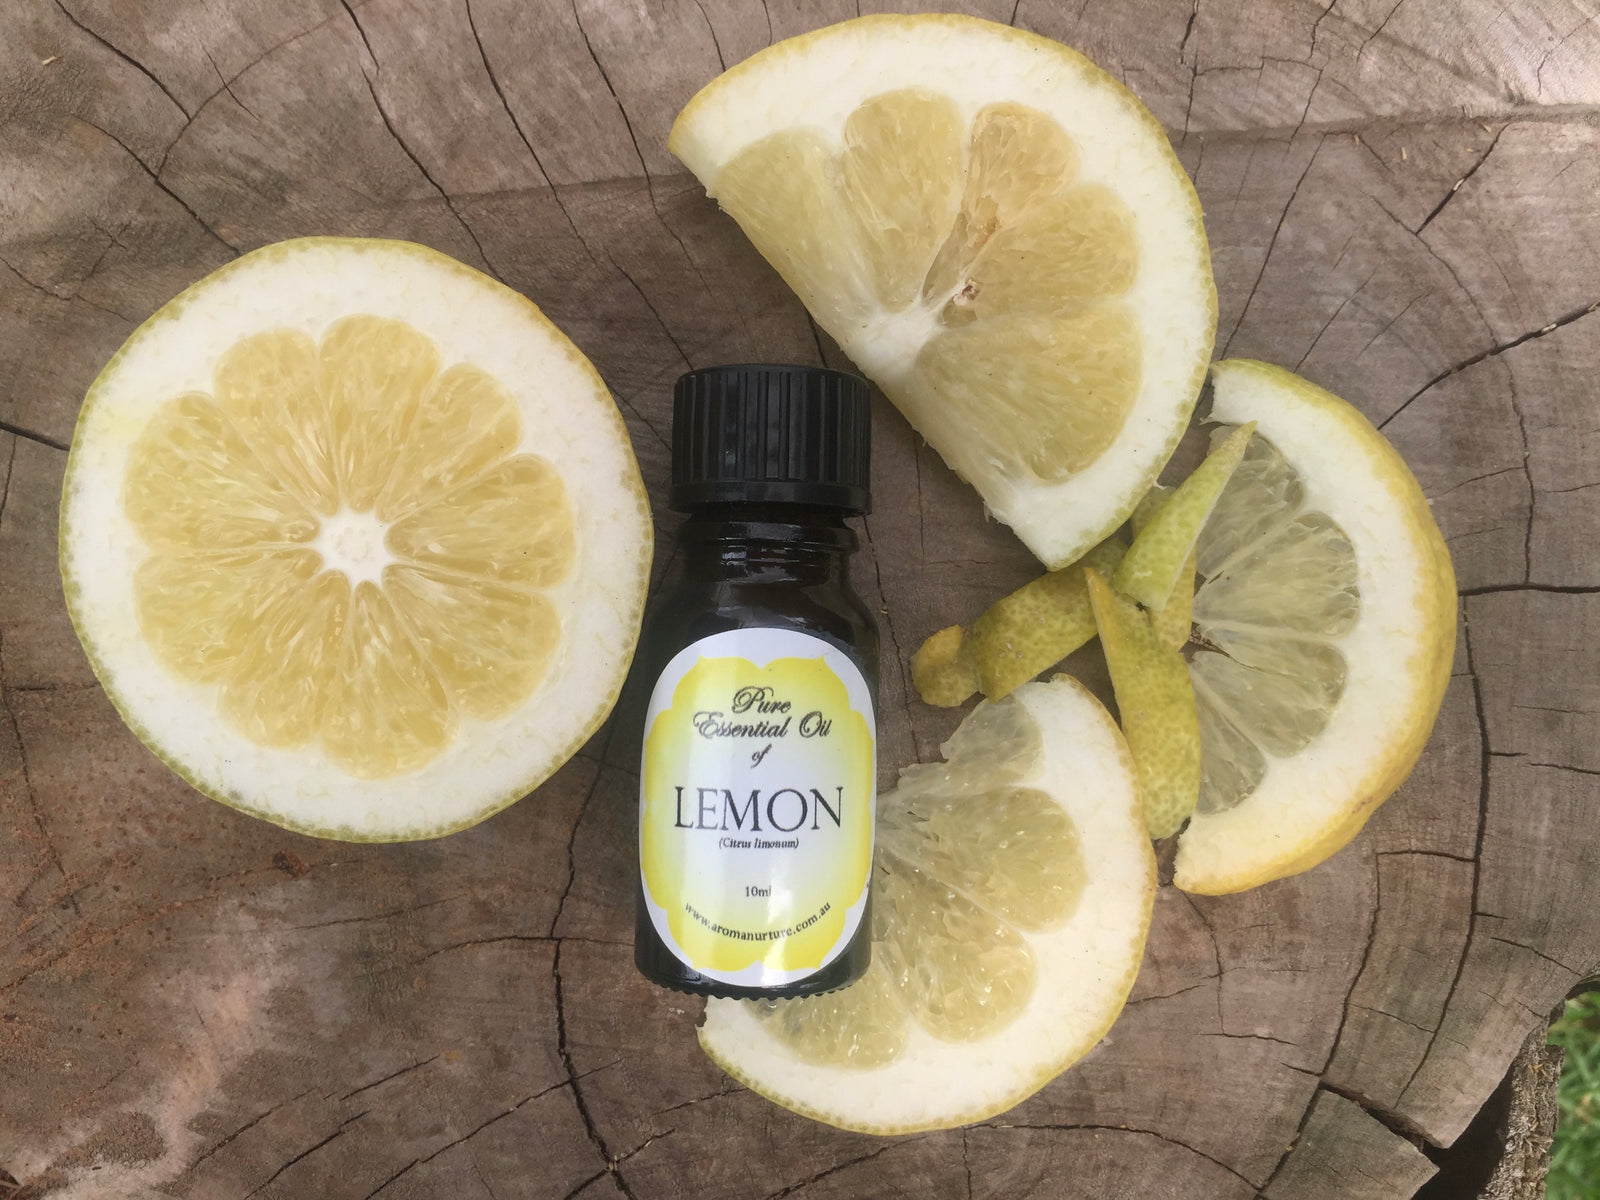 Pure essential oil of Lemon 10mls. (Citrus limonum).